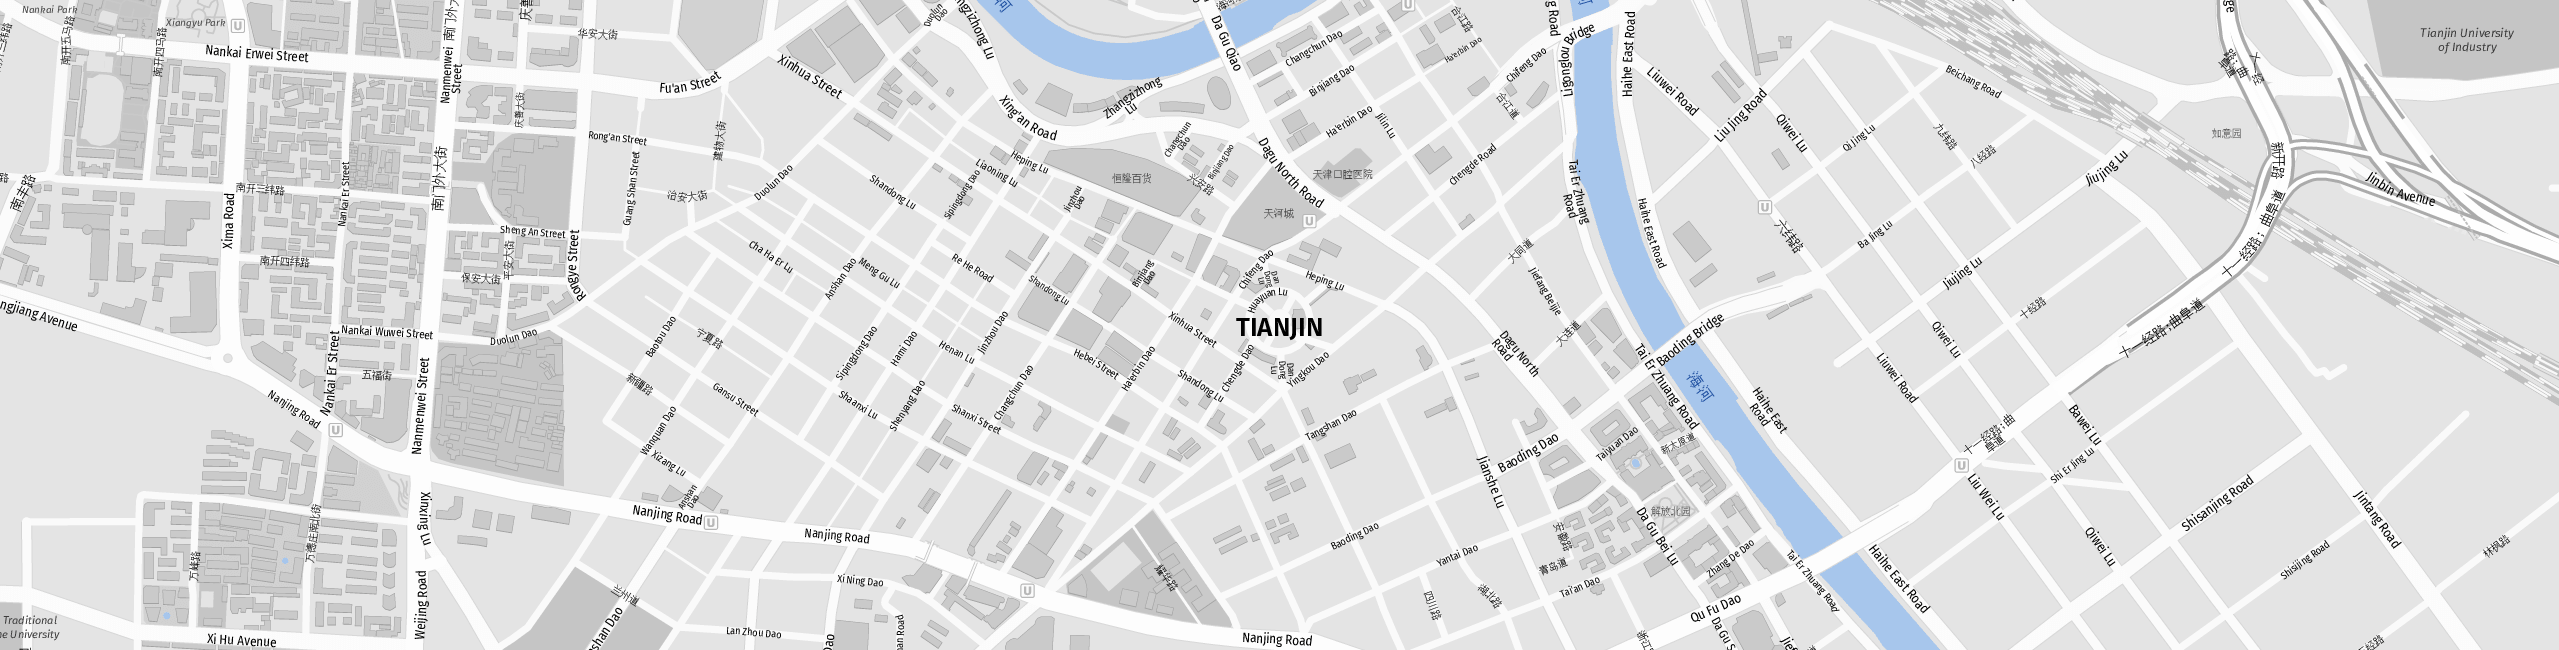 Stadtplan Tianjin zum Downloaden.